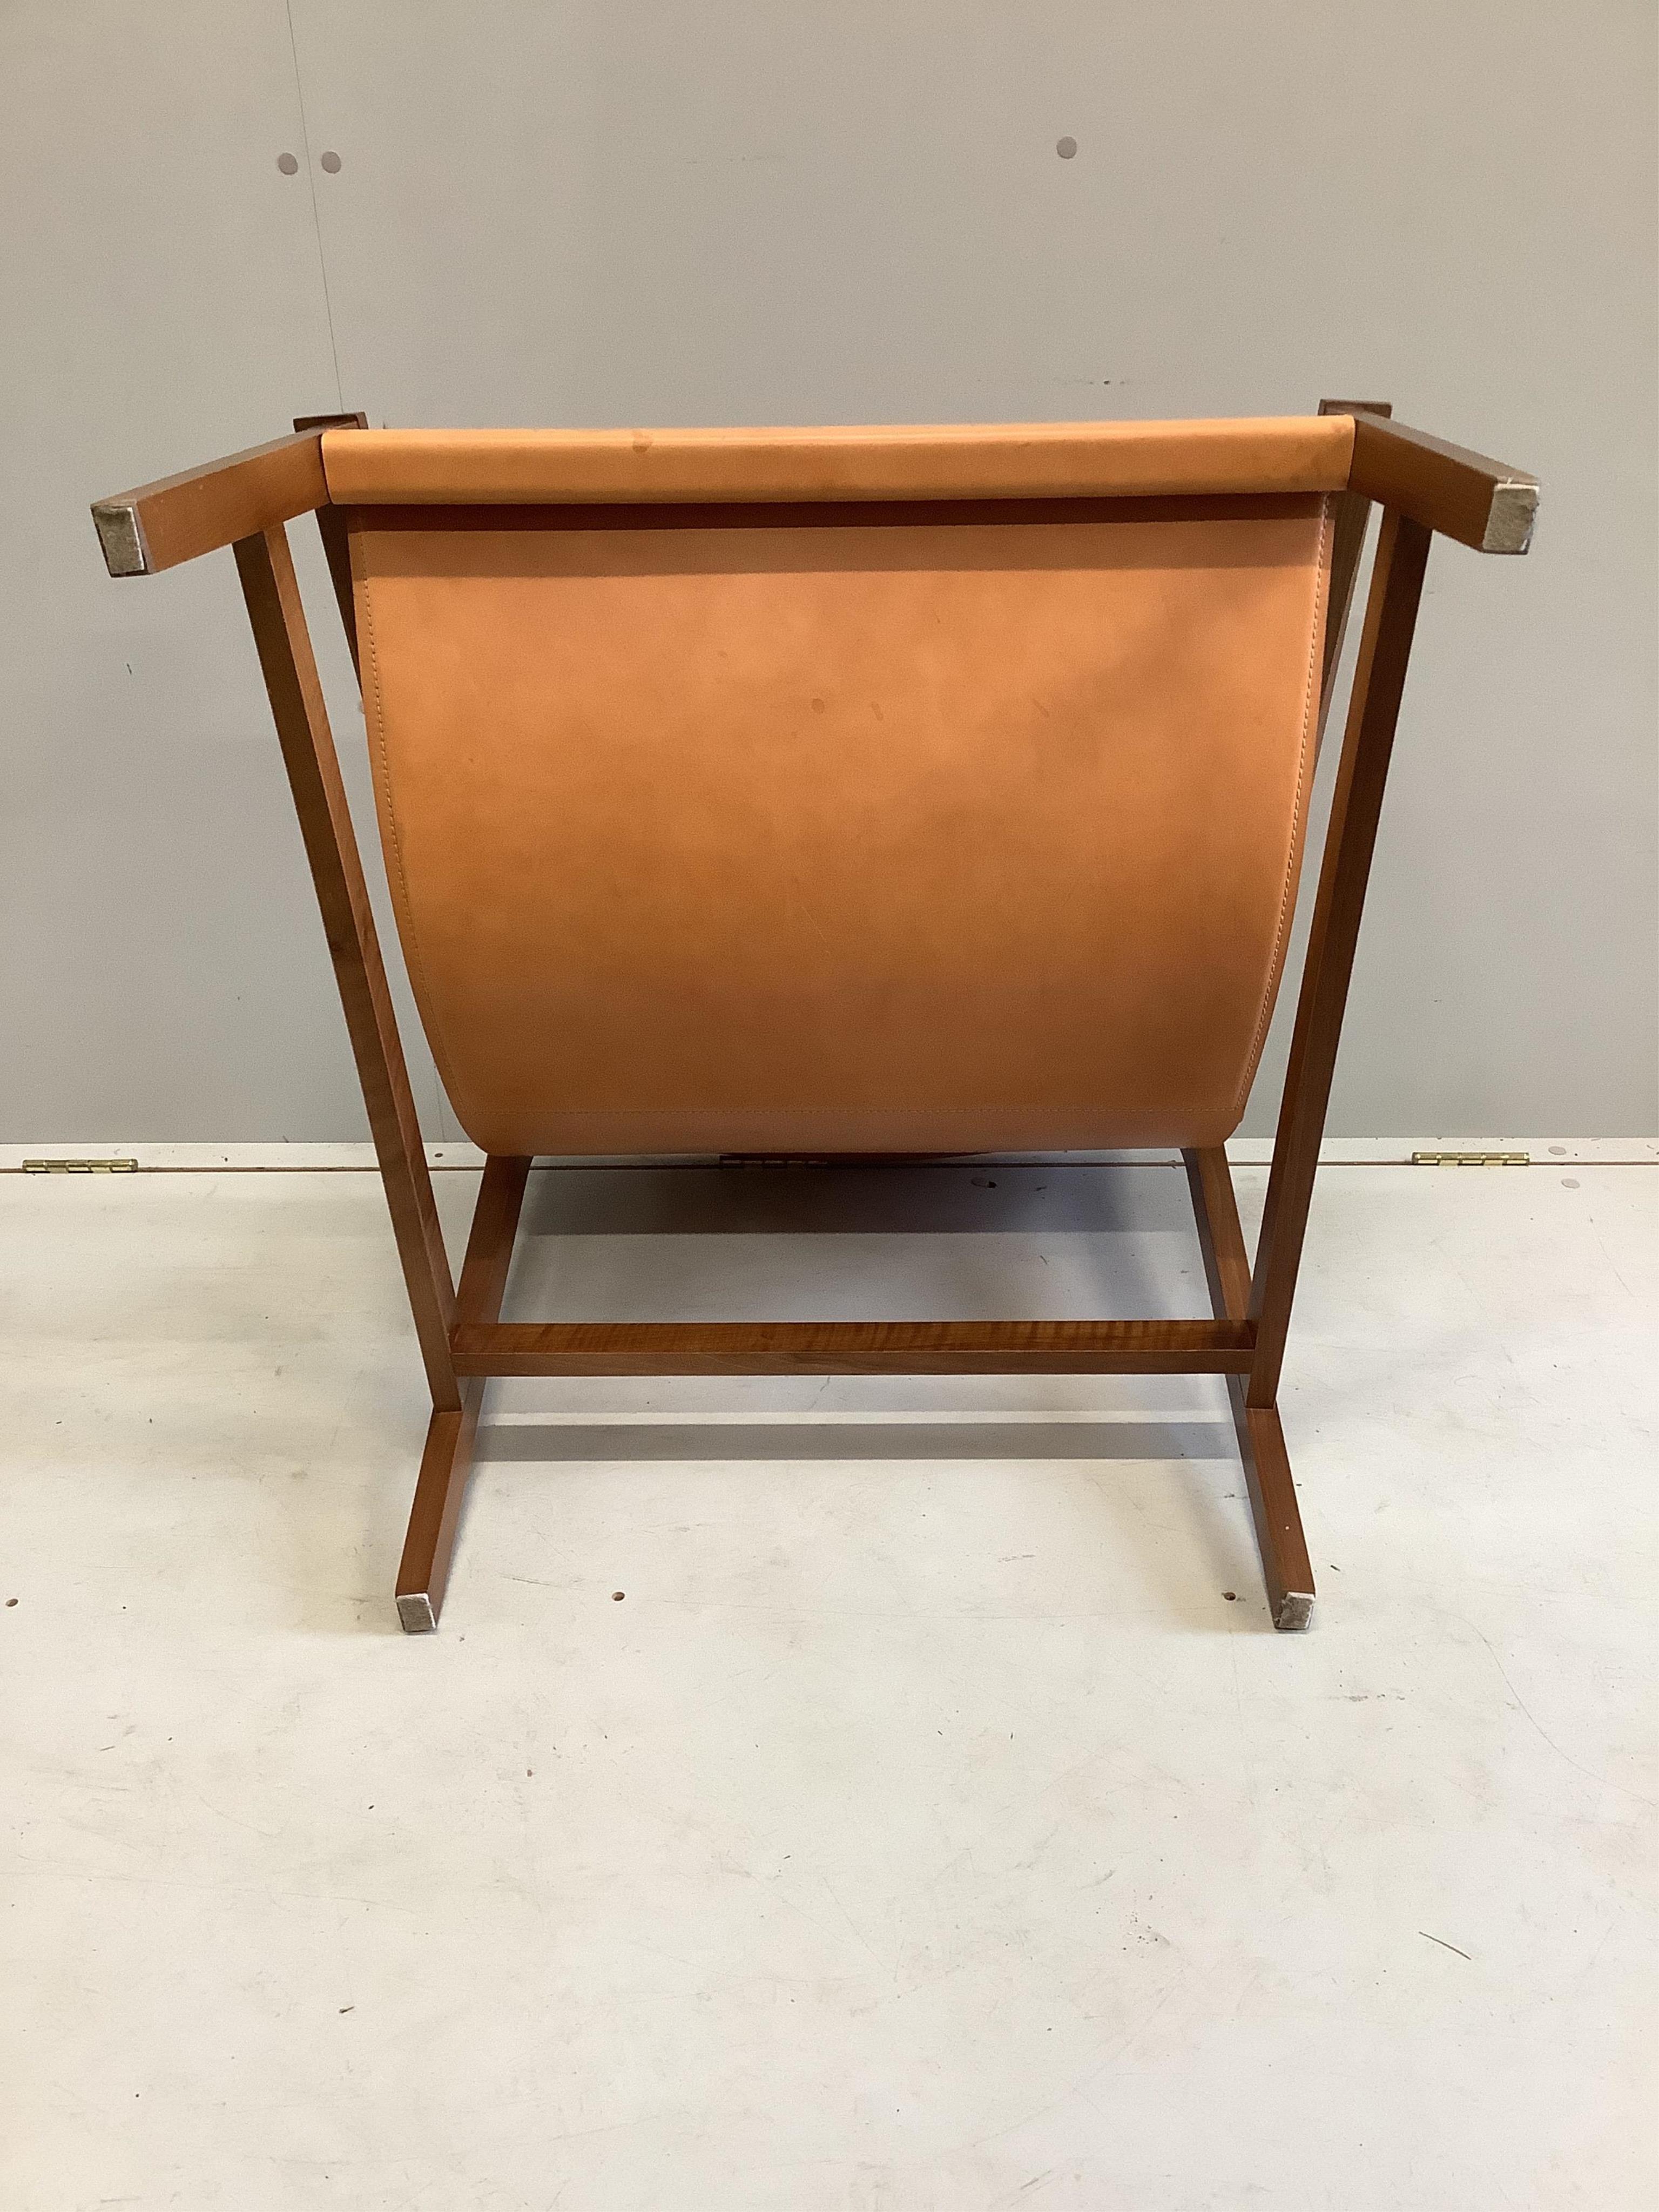 A Sdraio Chair by Living Divani, width 77cm, depth 74cm, height 66cm. Condition - fair